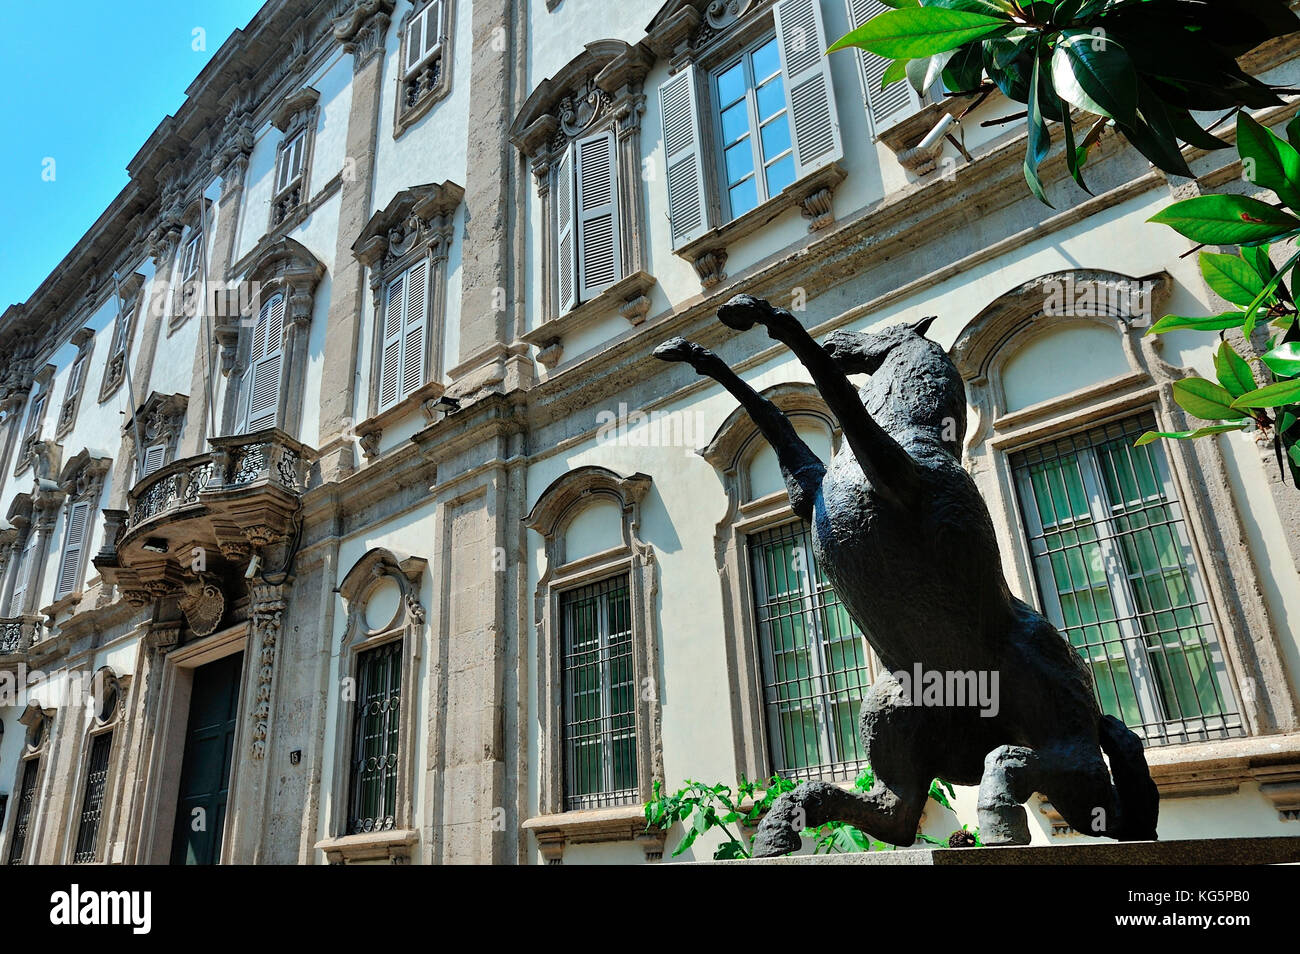 Palazzo cusani, palace edificio histórico en el distrito de Brera, Milán, via Brera 13, Italia Foto de stock